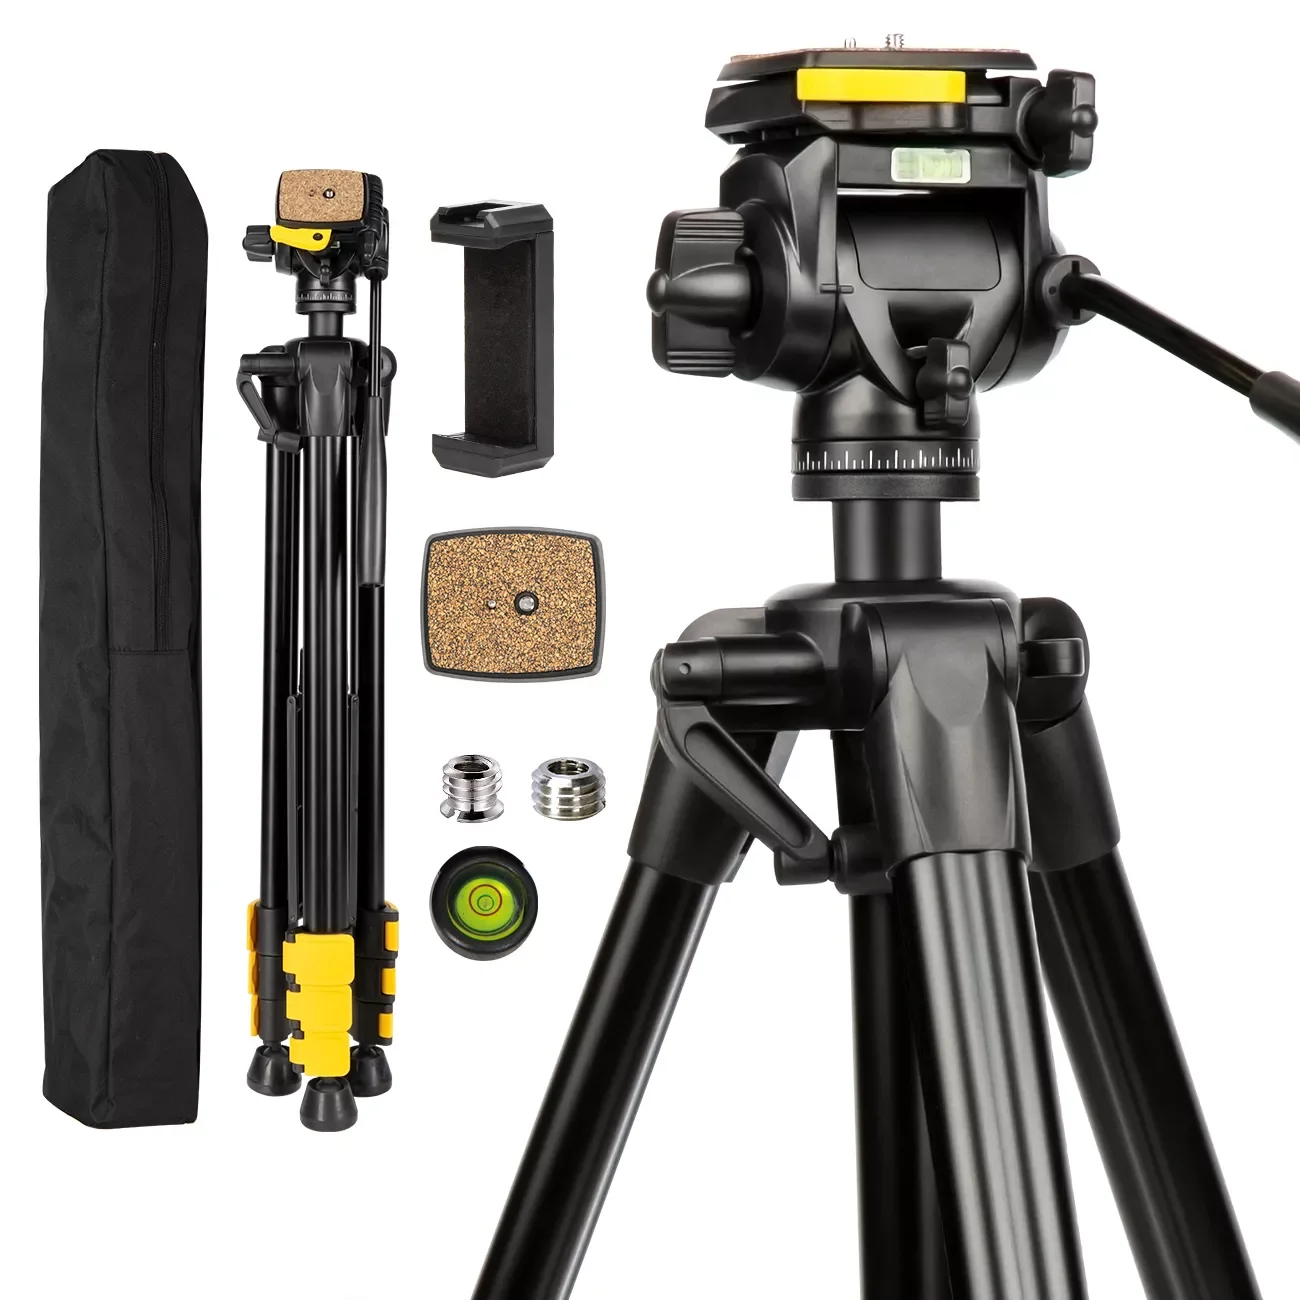 

Штатив для фотоаппарата, 2022 дюйма, 205 см, для лазерного уровня/термометра/камеры Canon/Nikon/DSLR/видеокамеры с жидкостью на 360 градусов